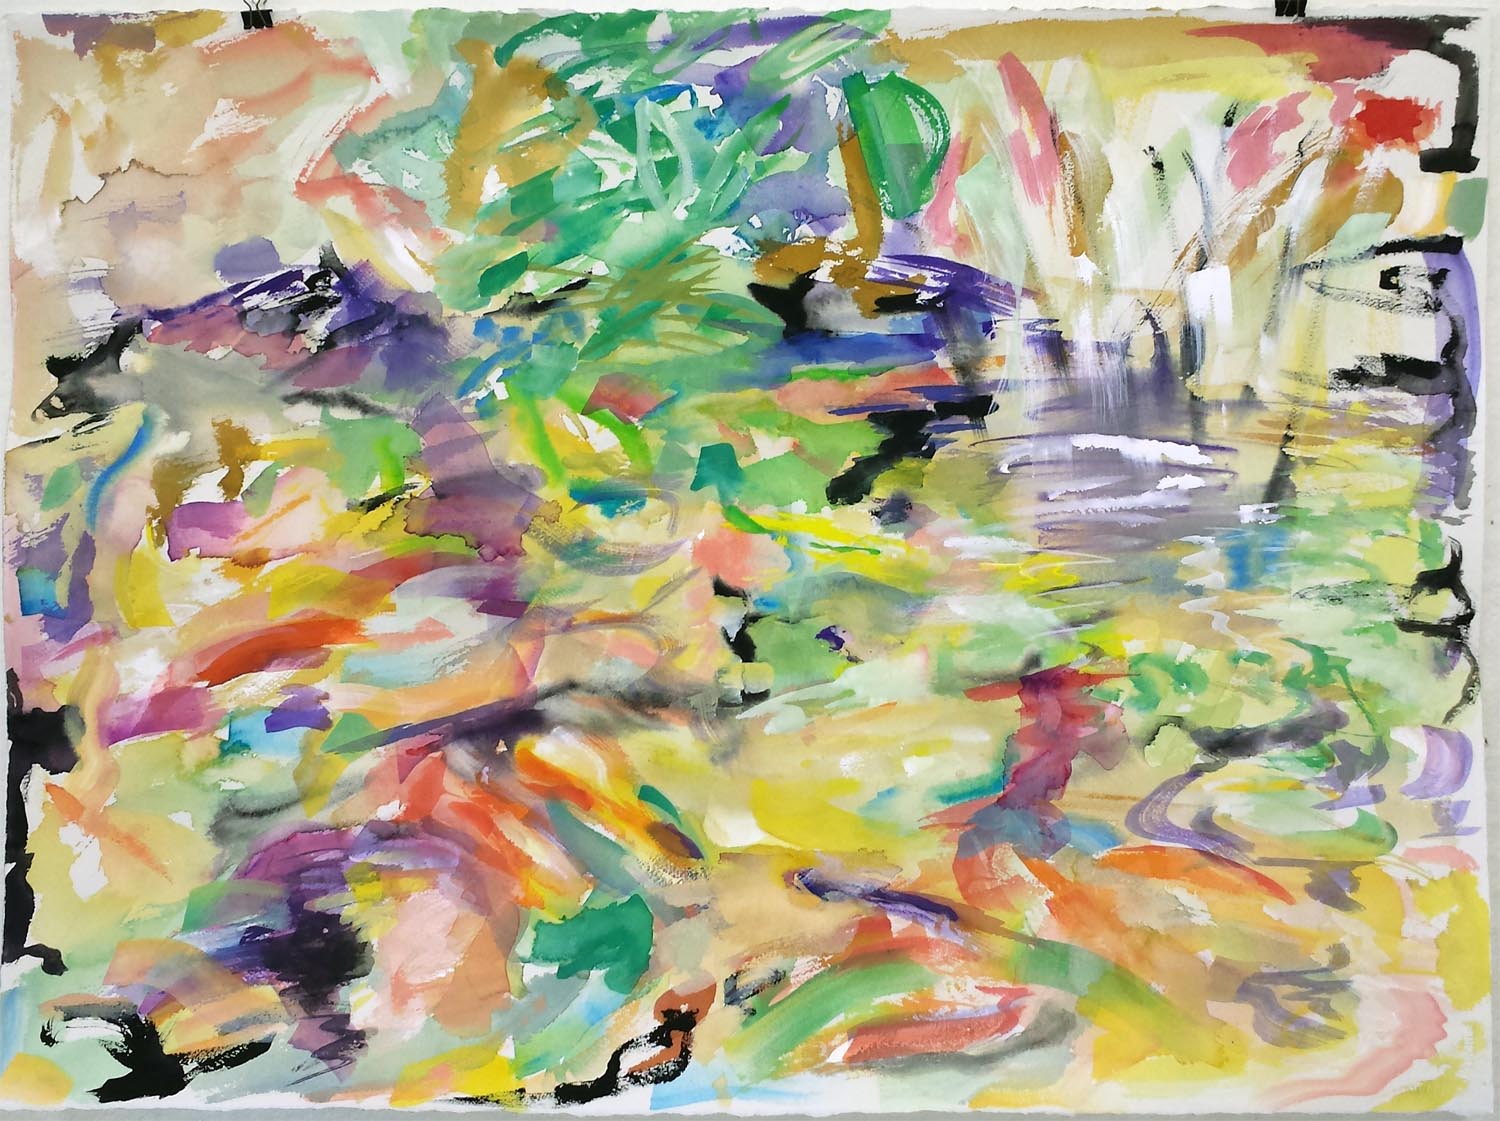 Koi Impression IV, gouache on paper, 22" x 30" 2015